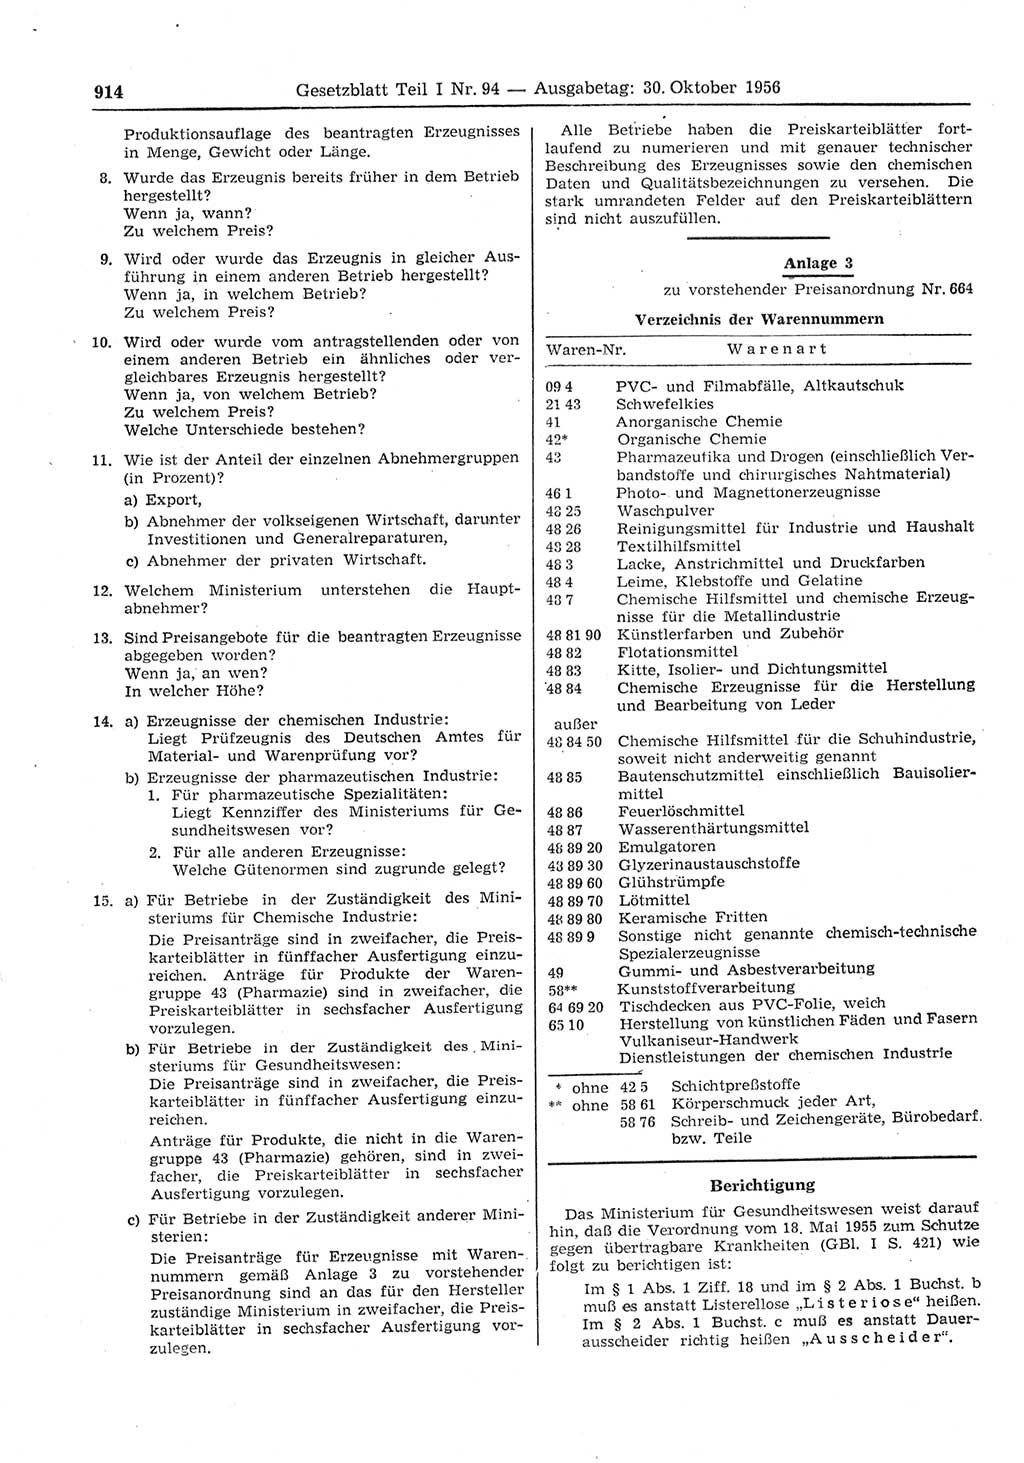 Gesetzblatt (GBl.) der Deutschen Demokratischen Republik (DDR) Teil Ⅰ 1956, Seite 914 (GBl. DDR Ⅰ 1956, S. 914)